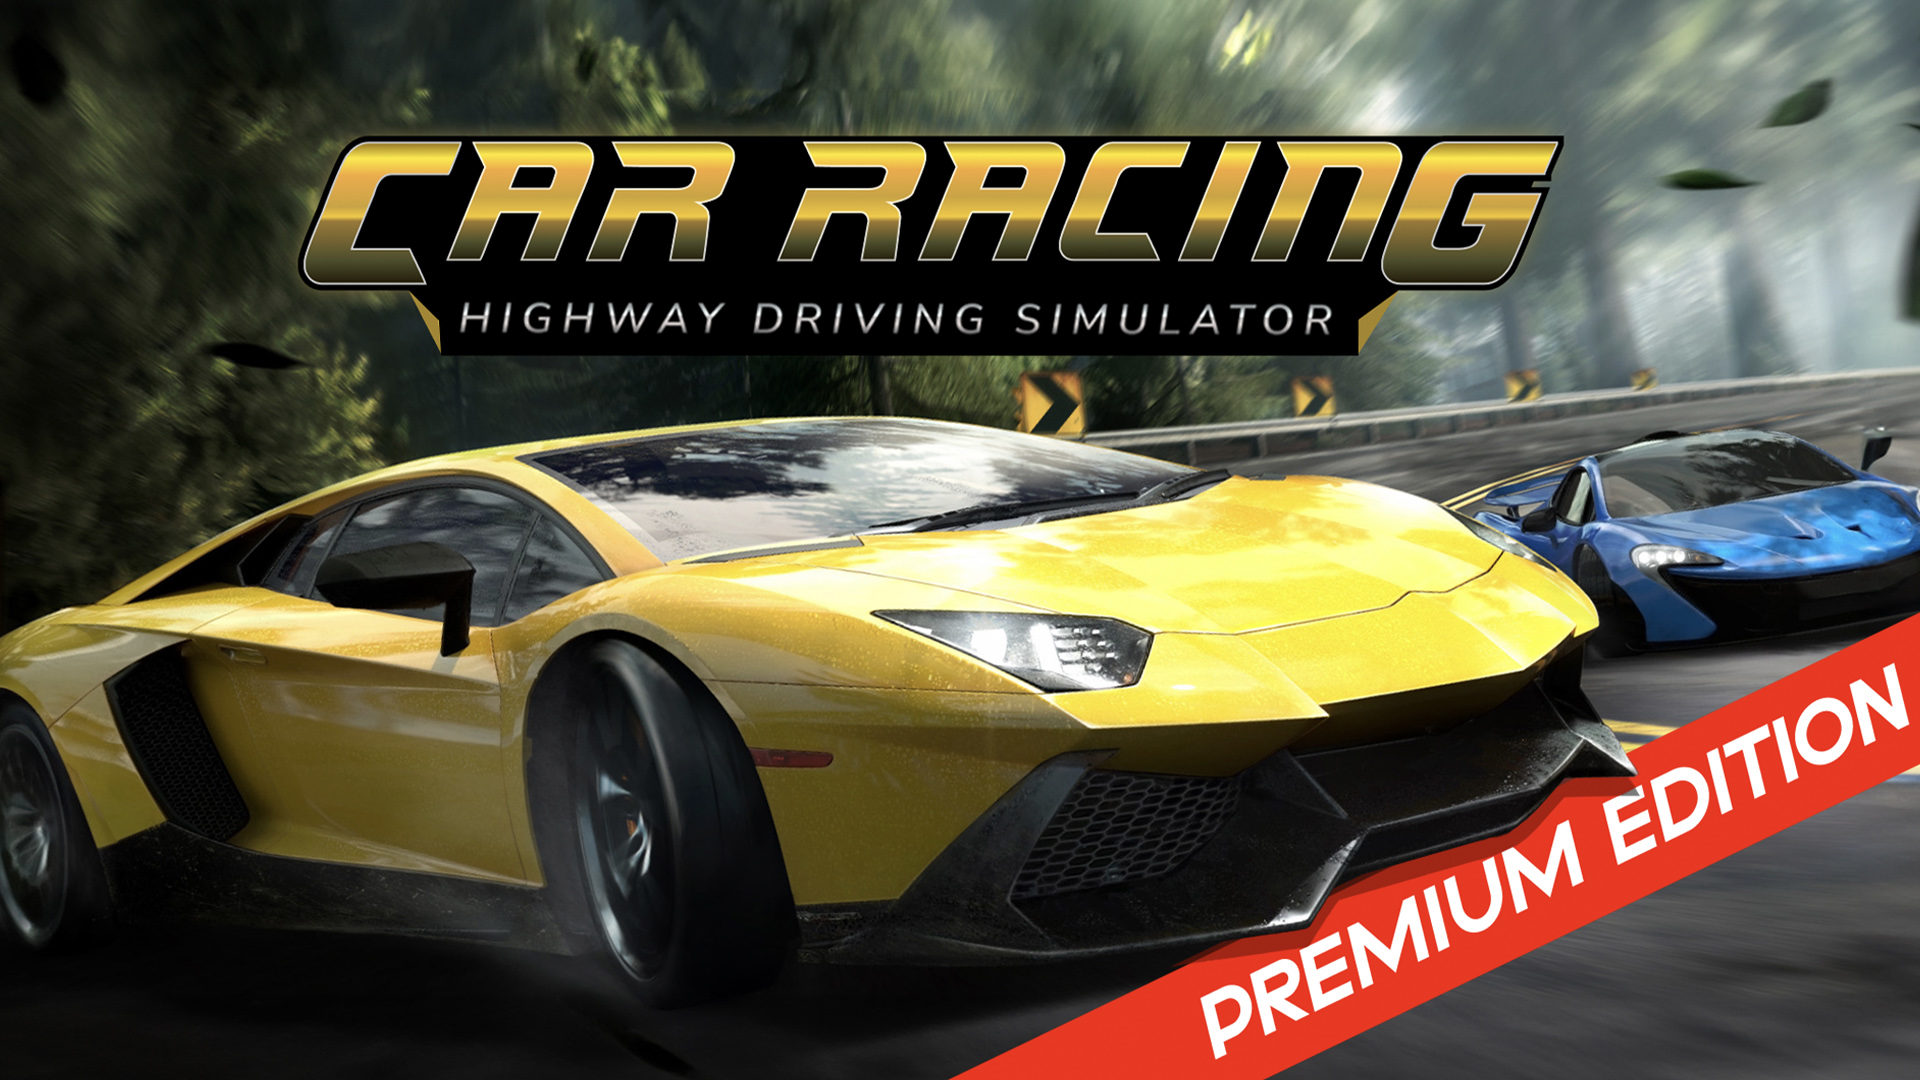 Car Racing Highway Driving Simulator - PREMIUM EDITION